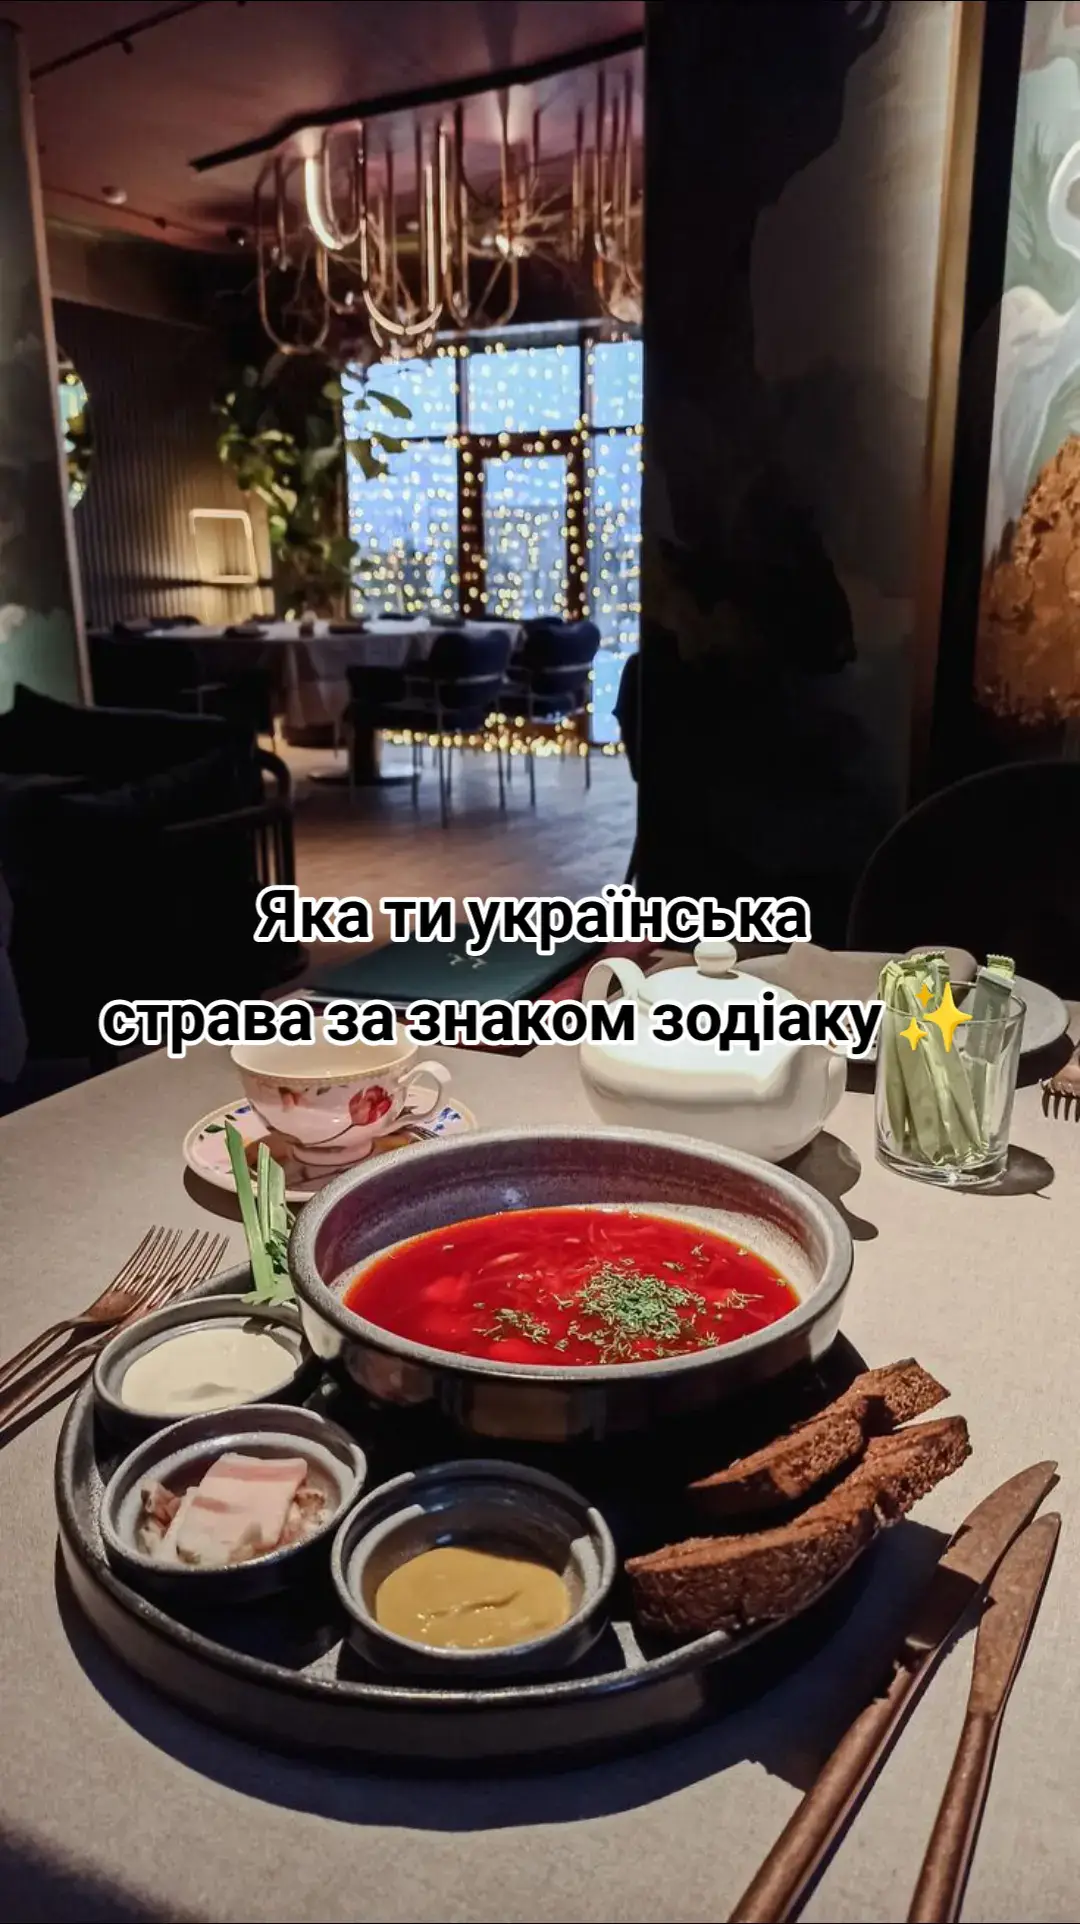 Яка твоя страва? Ukrainian dishes🩵💛 #fyp  #food #ukraine  #aesthetic  #fyp  #fypシ 